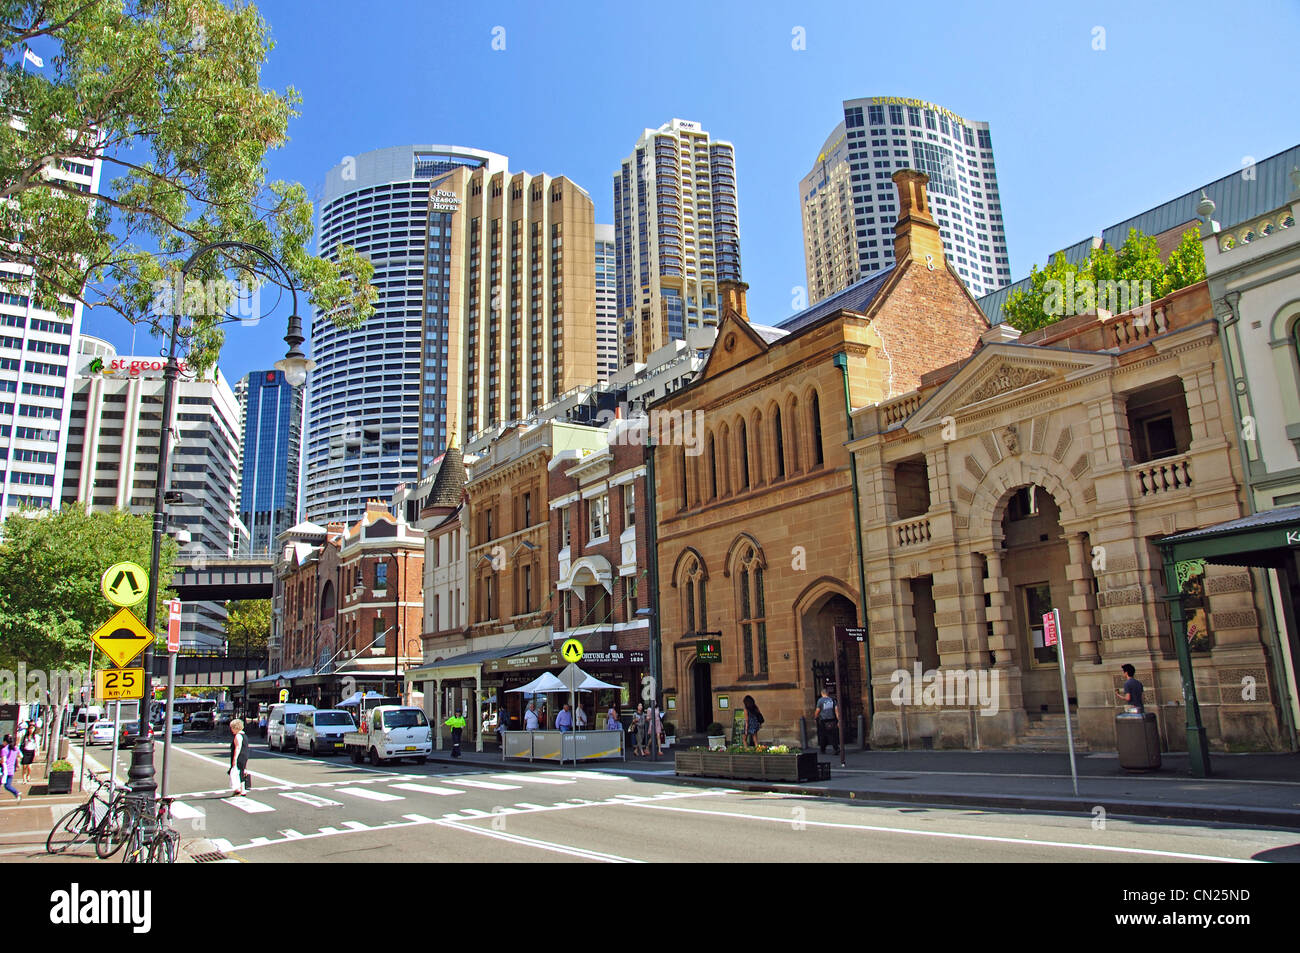 Image Result For Travel Centre George Street Sydney